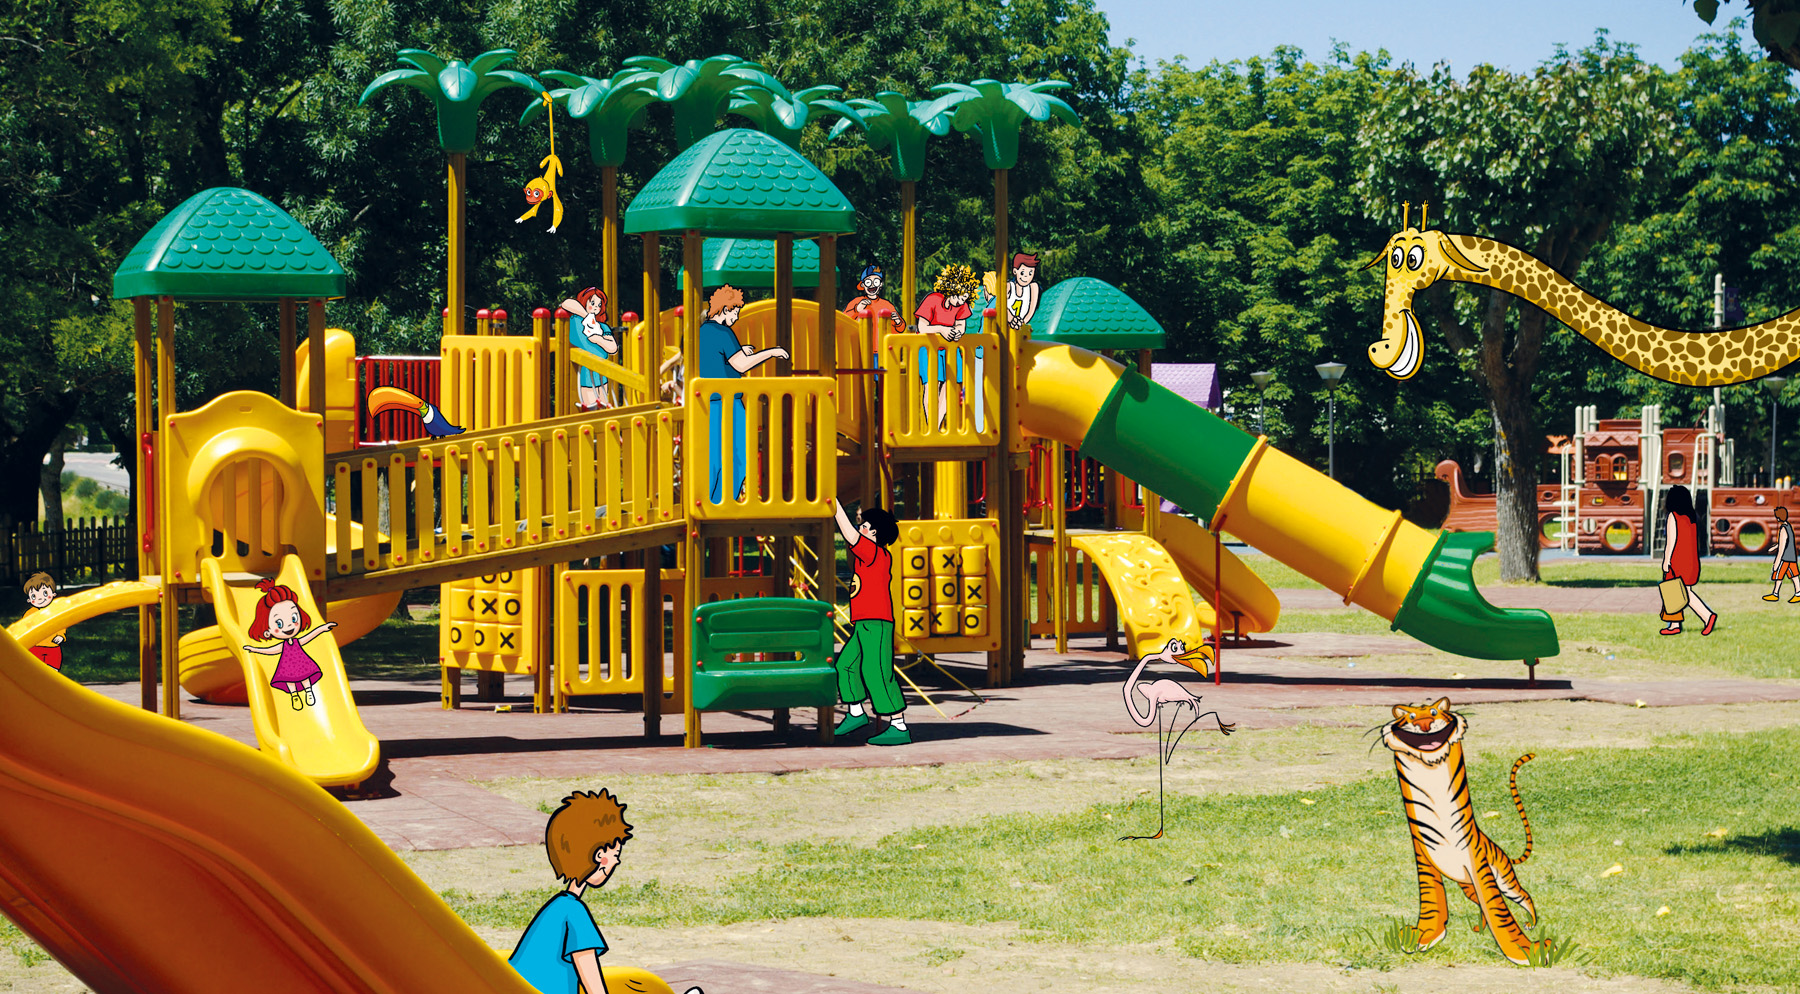 Nuovi giochi per bambini verranno installati in varie zone di Priolo, nei parchi e nelle scuole